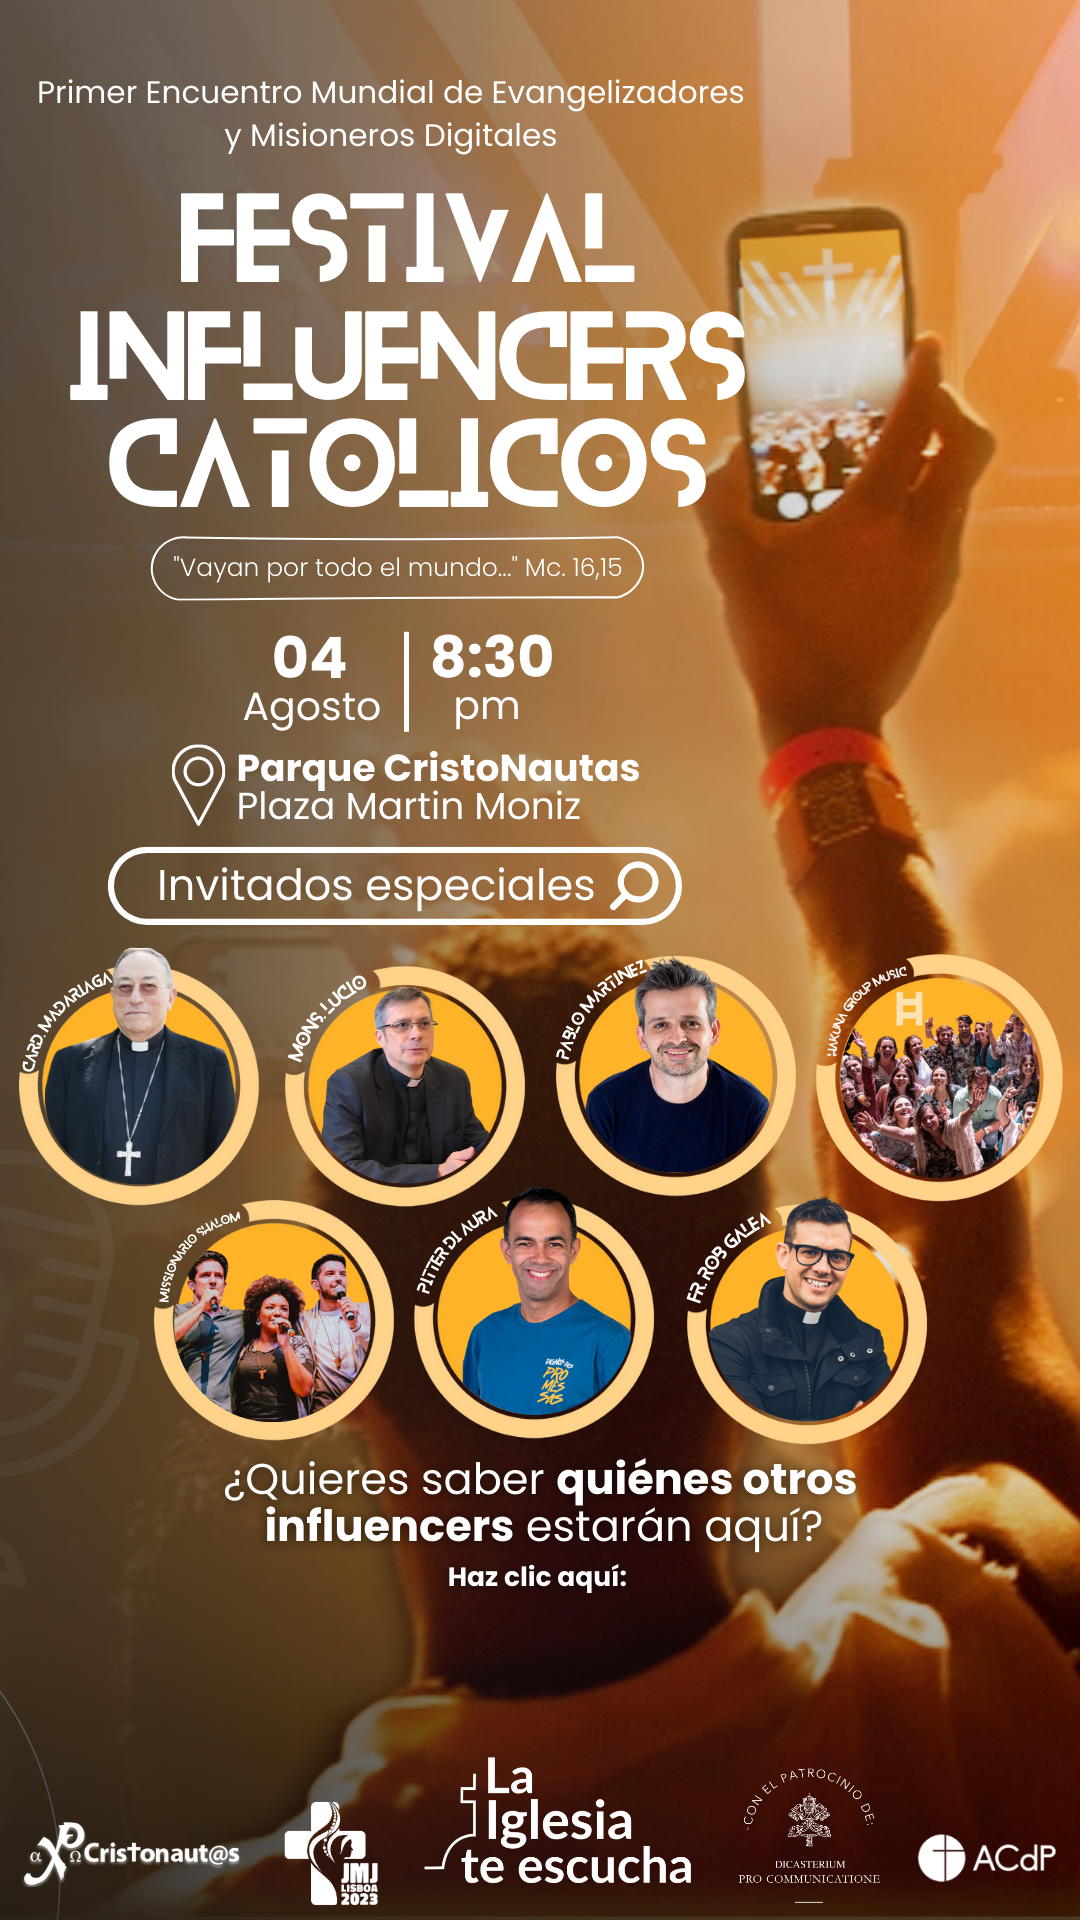 Primer Encuentro Mundial de Misioneros Digitales en el Festival de Influencers Católicos